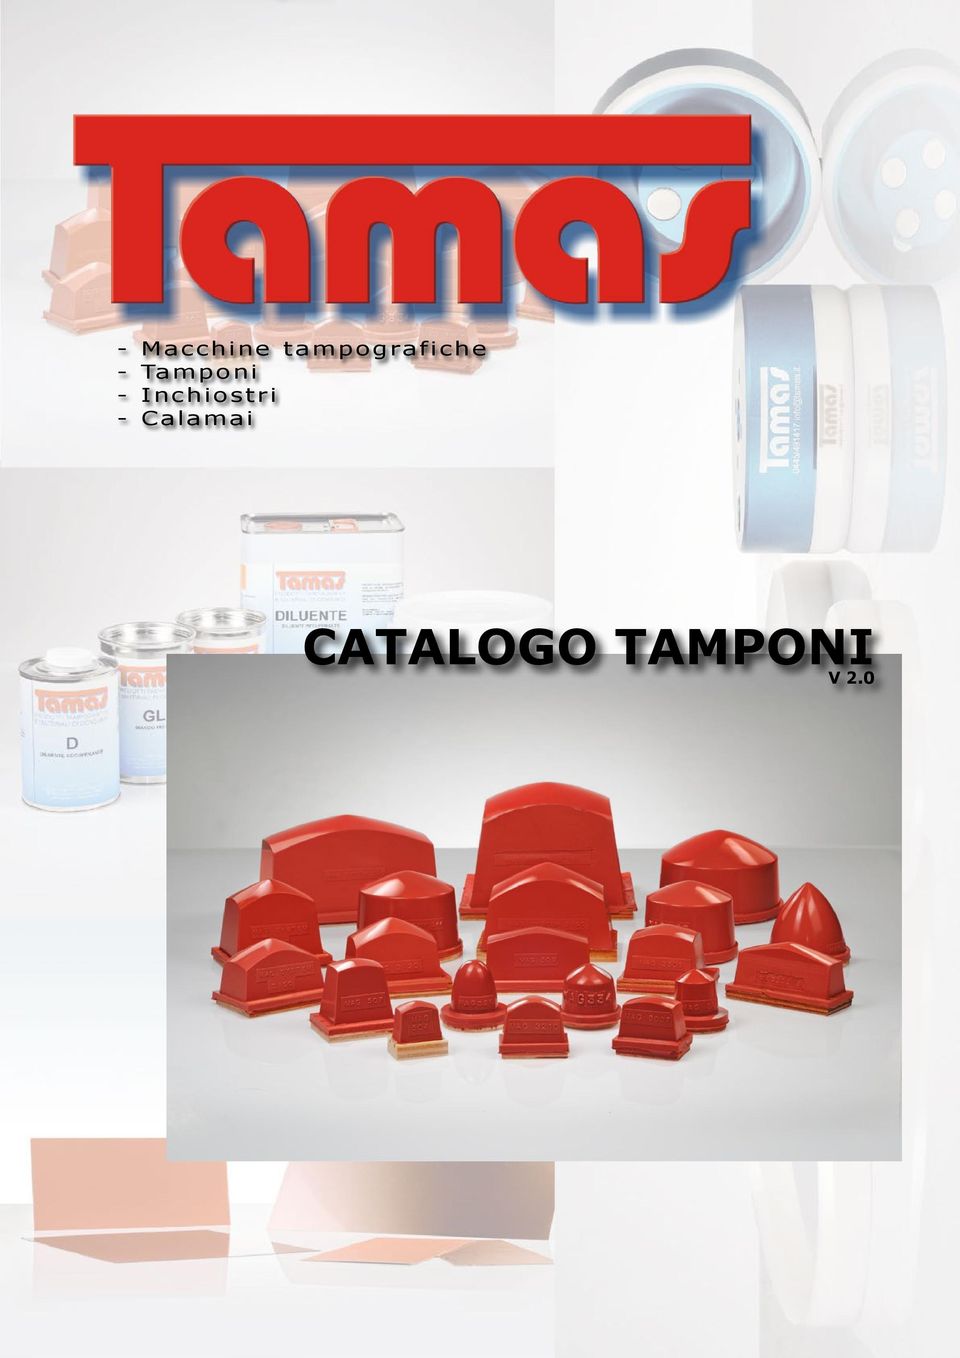 tampografiche - Tamponi - Inchiostri - Calamai